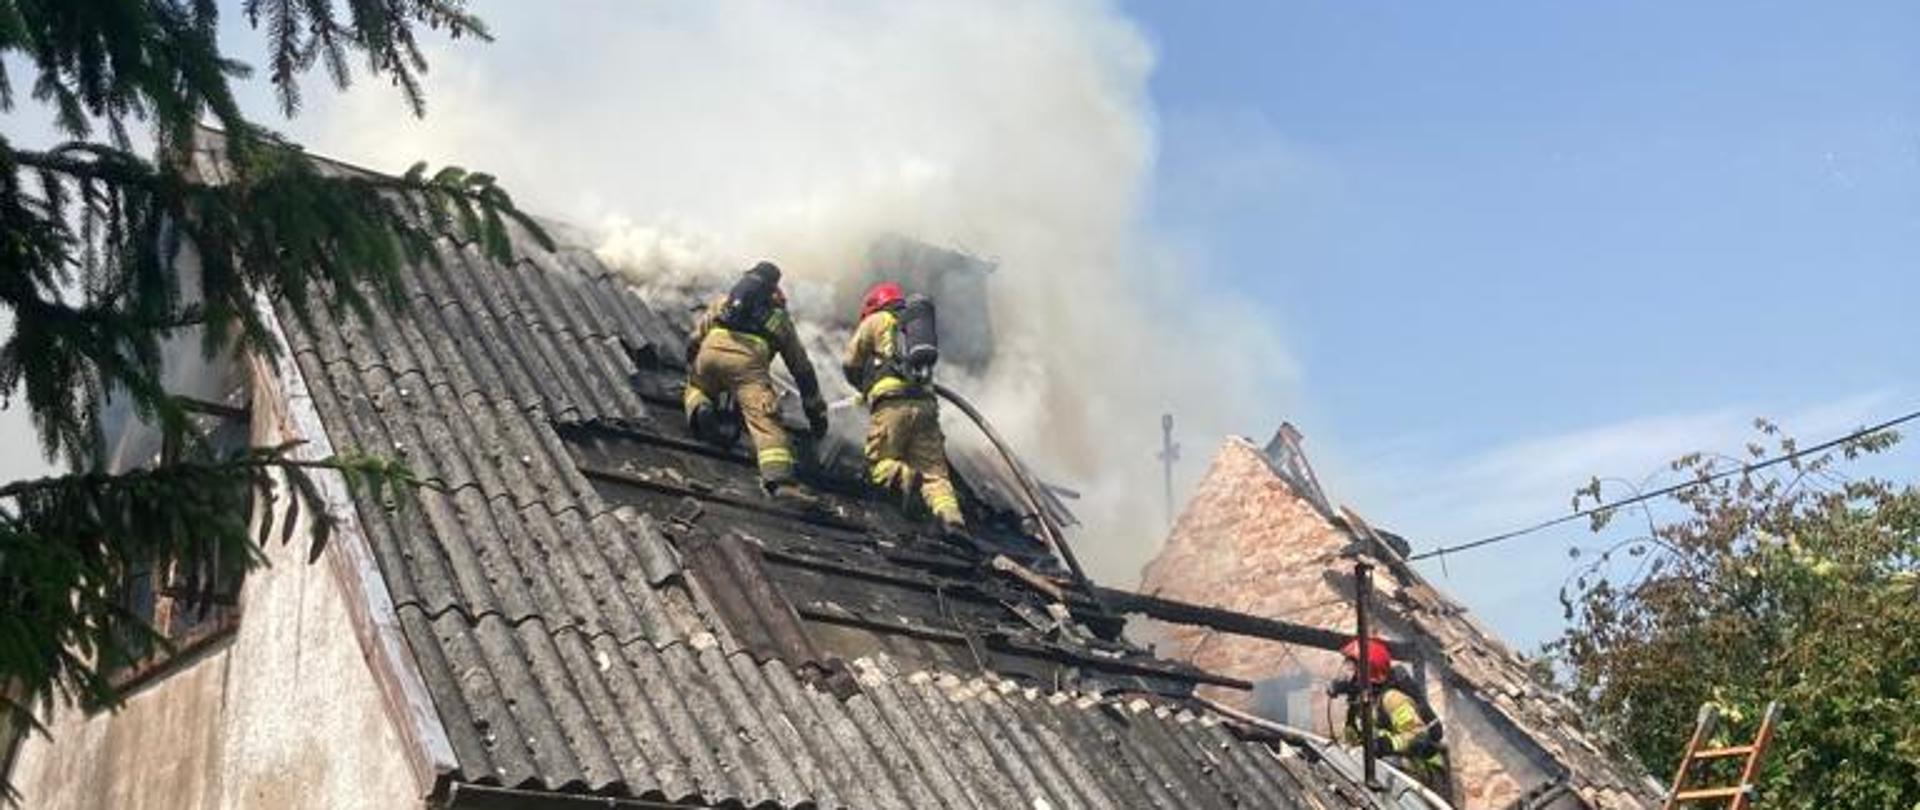 Fotografia przedstawia strażaków gaszących palący się budynek, dwóch znajduje się na dachu, widać dym. Przy budynku widać drabinę strażacką i strażaków na miejscu zdarzenia.